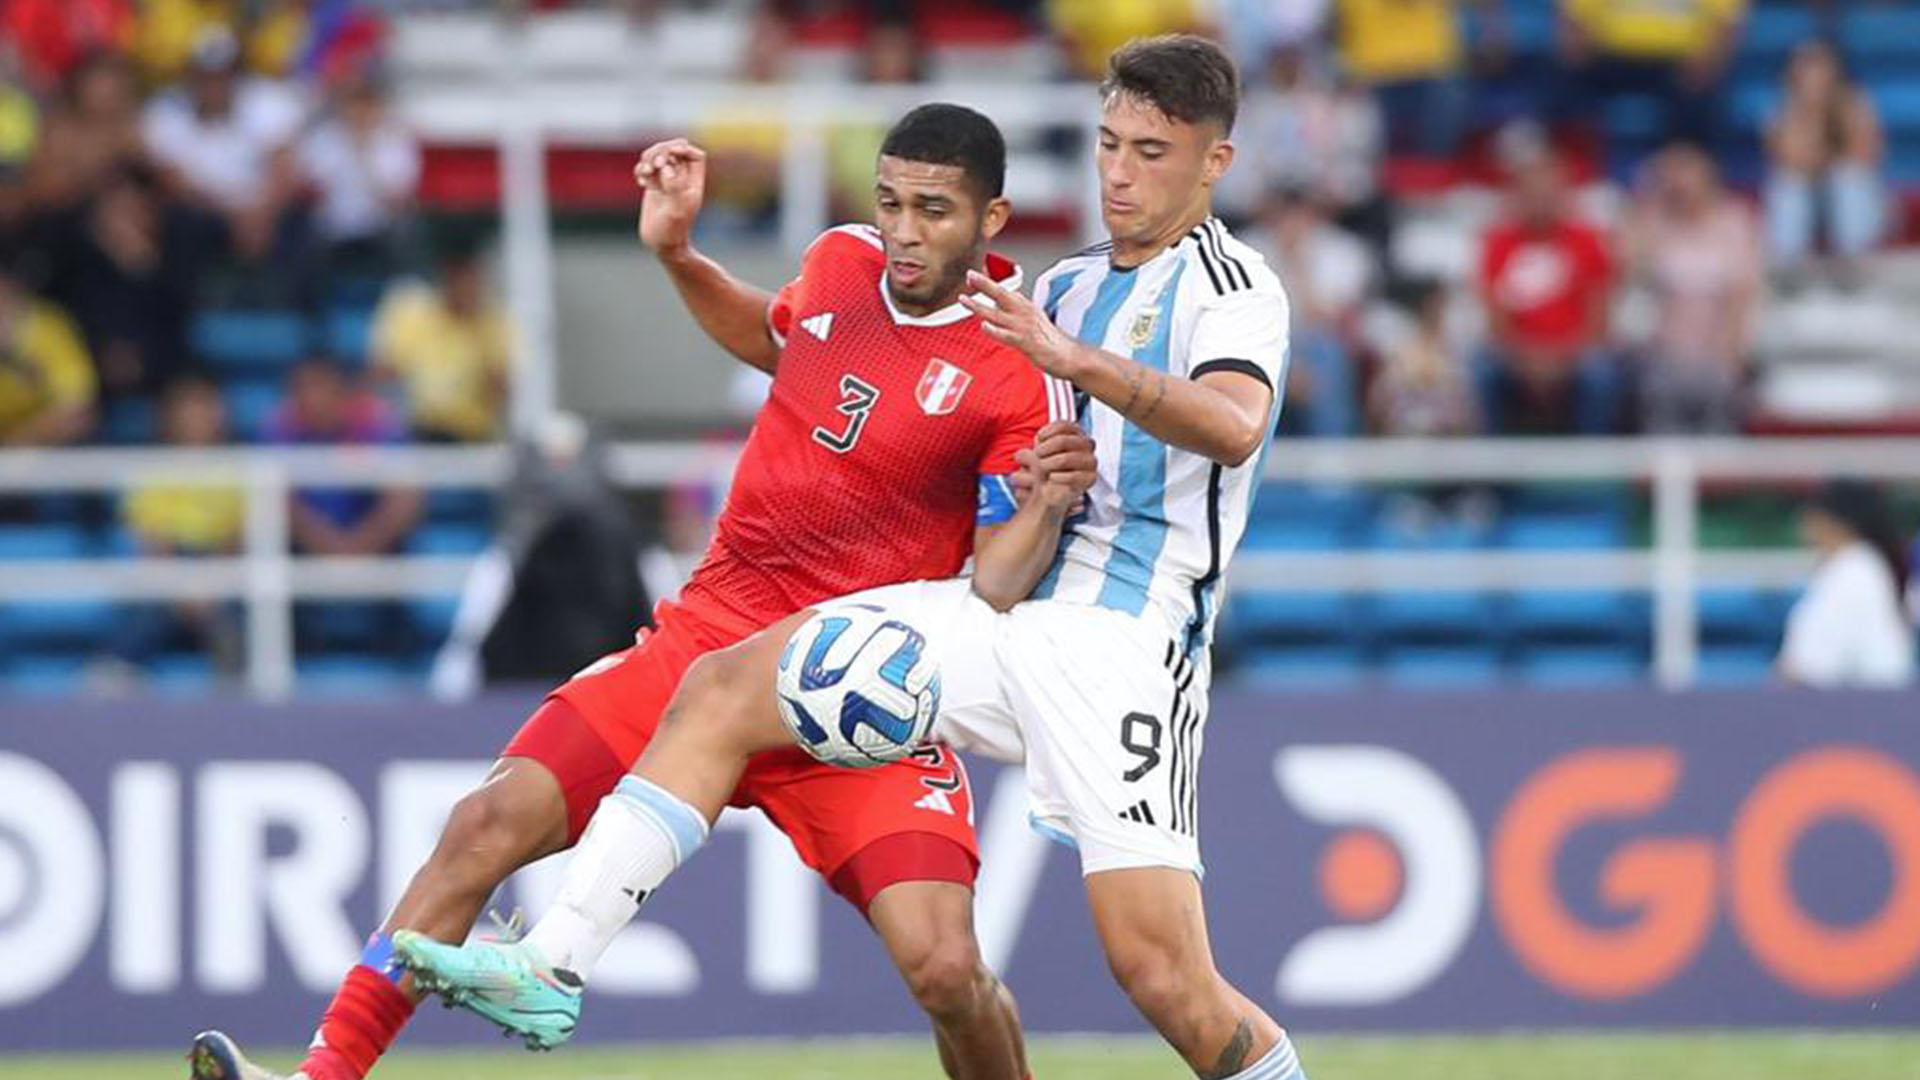 La selección peruana Sub 20 perdió ante Argentina y arrojó unas terribles estadísticas en su eliminación del Sudamericano Sub 20. (FPF)